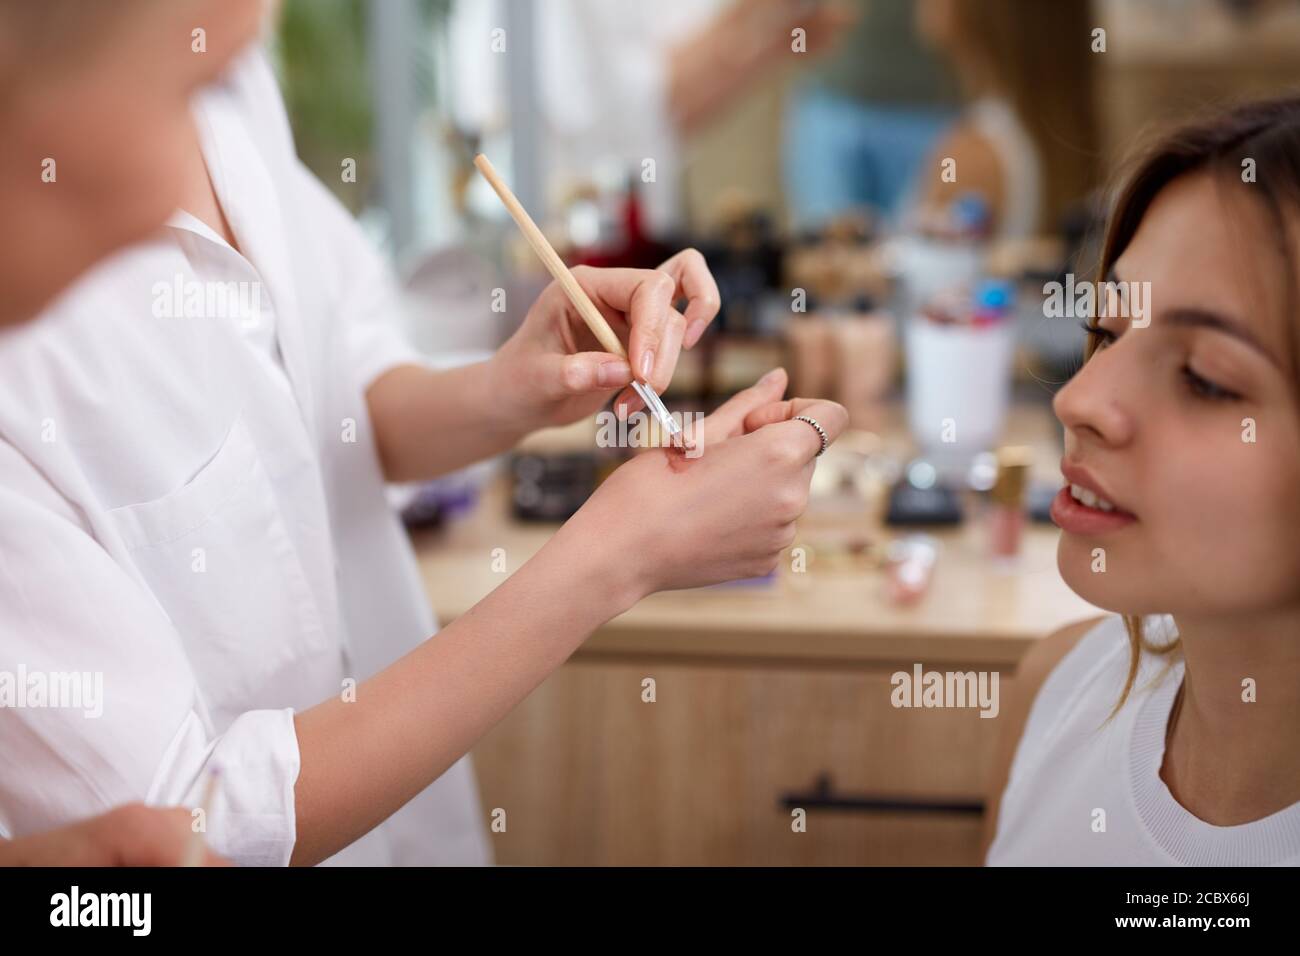 un maquilleur professionnel ou un visagiste applique des cosmétiques à portée de main avant de les appliquer sur le visage, dans un salon de beauté Banque D'Images